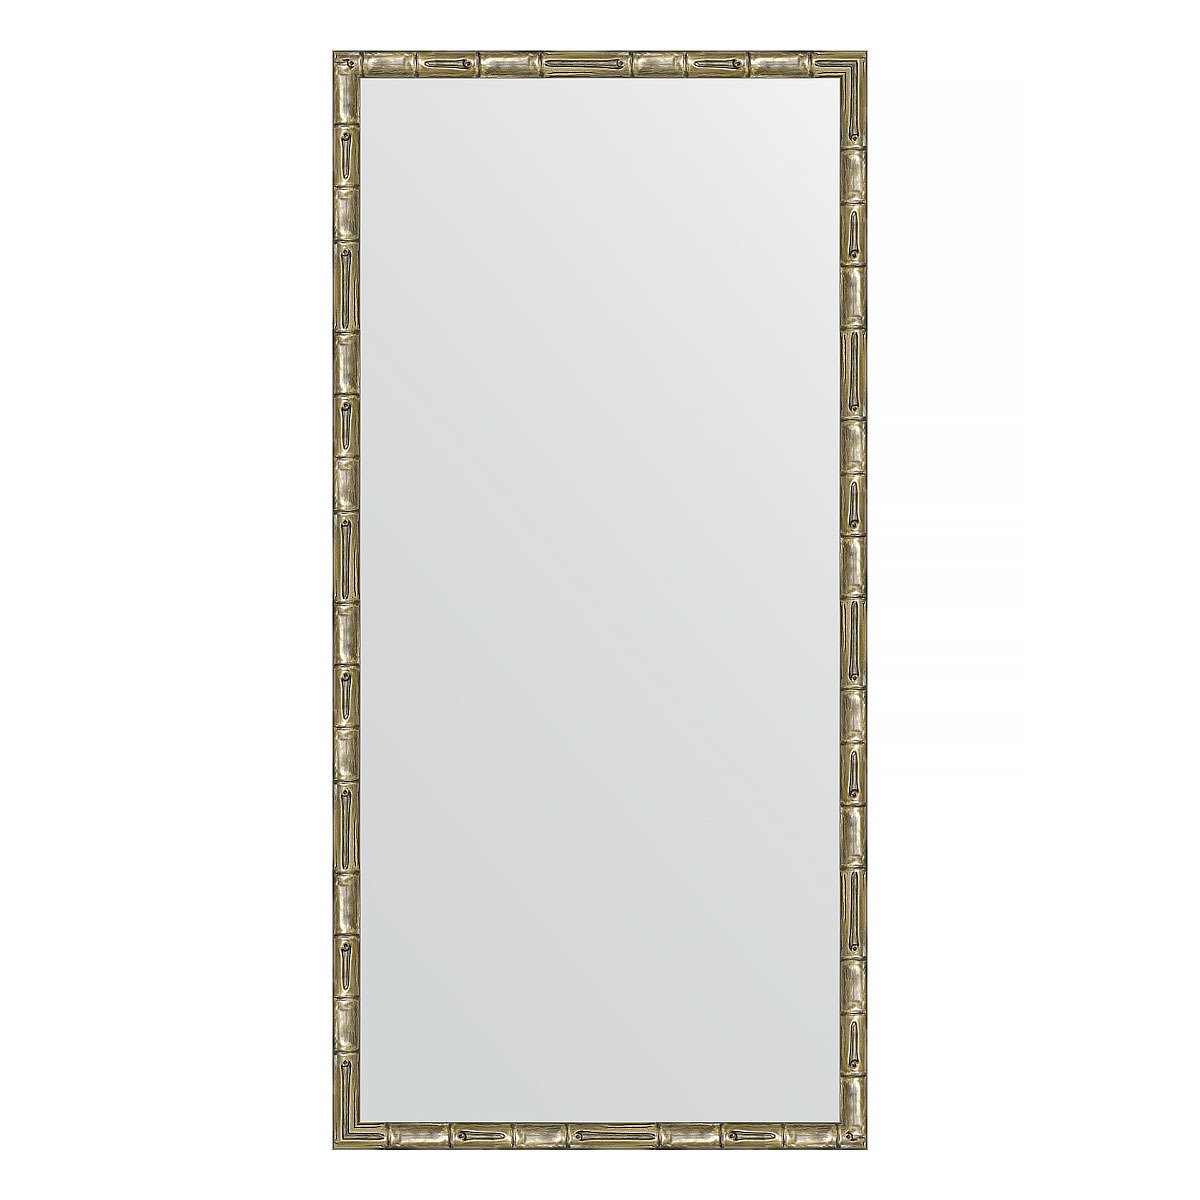 Зеркало в багетной раме Evoform серебряный бамбук 24 мм 47х97 см зеркало с фацетом в багетной раме evoform серебряный бамбук 73 мм 113х173 см